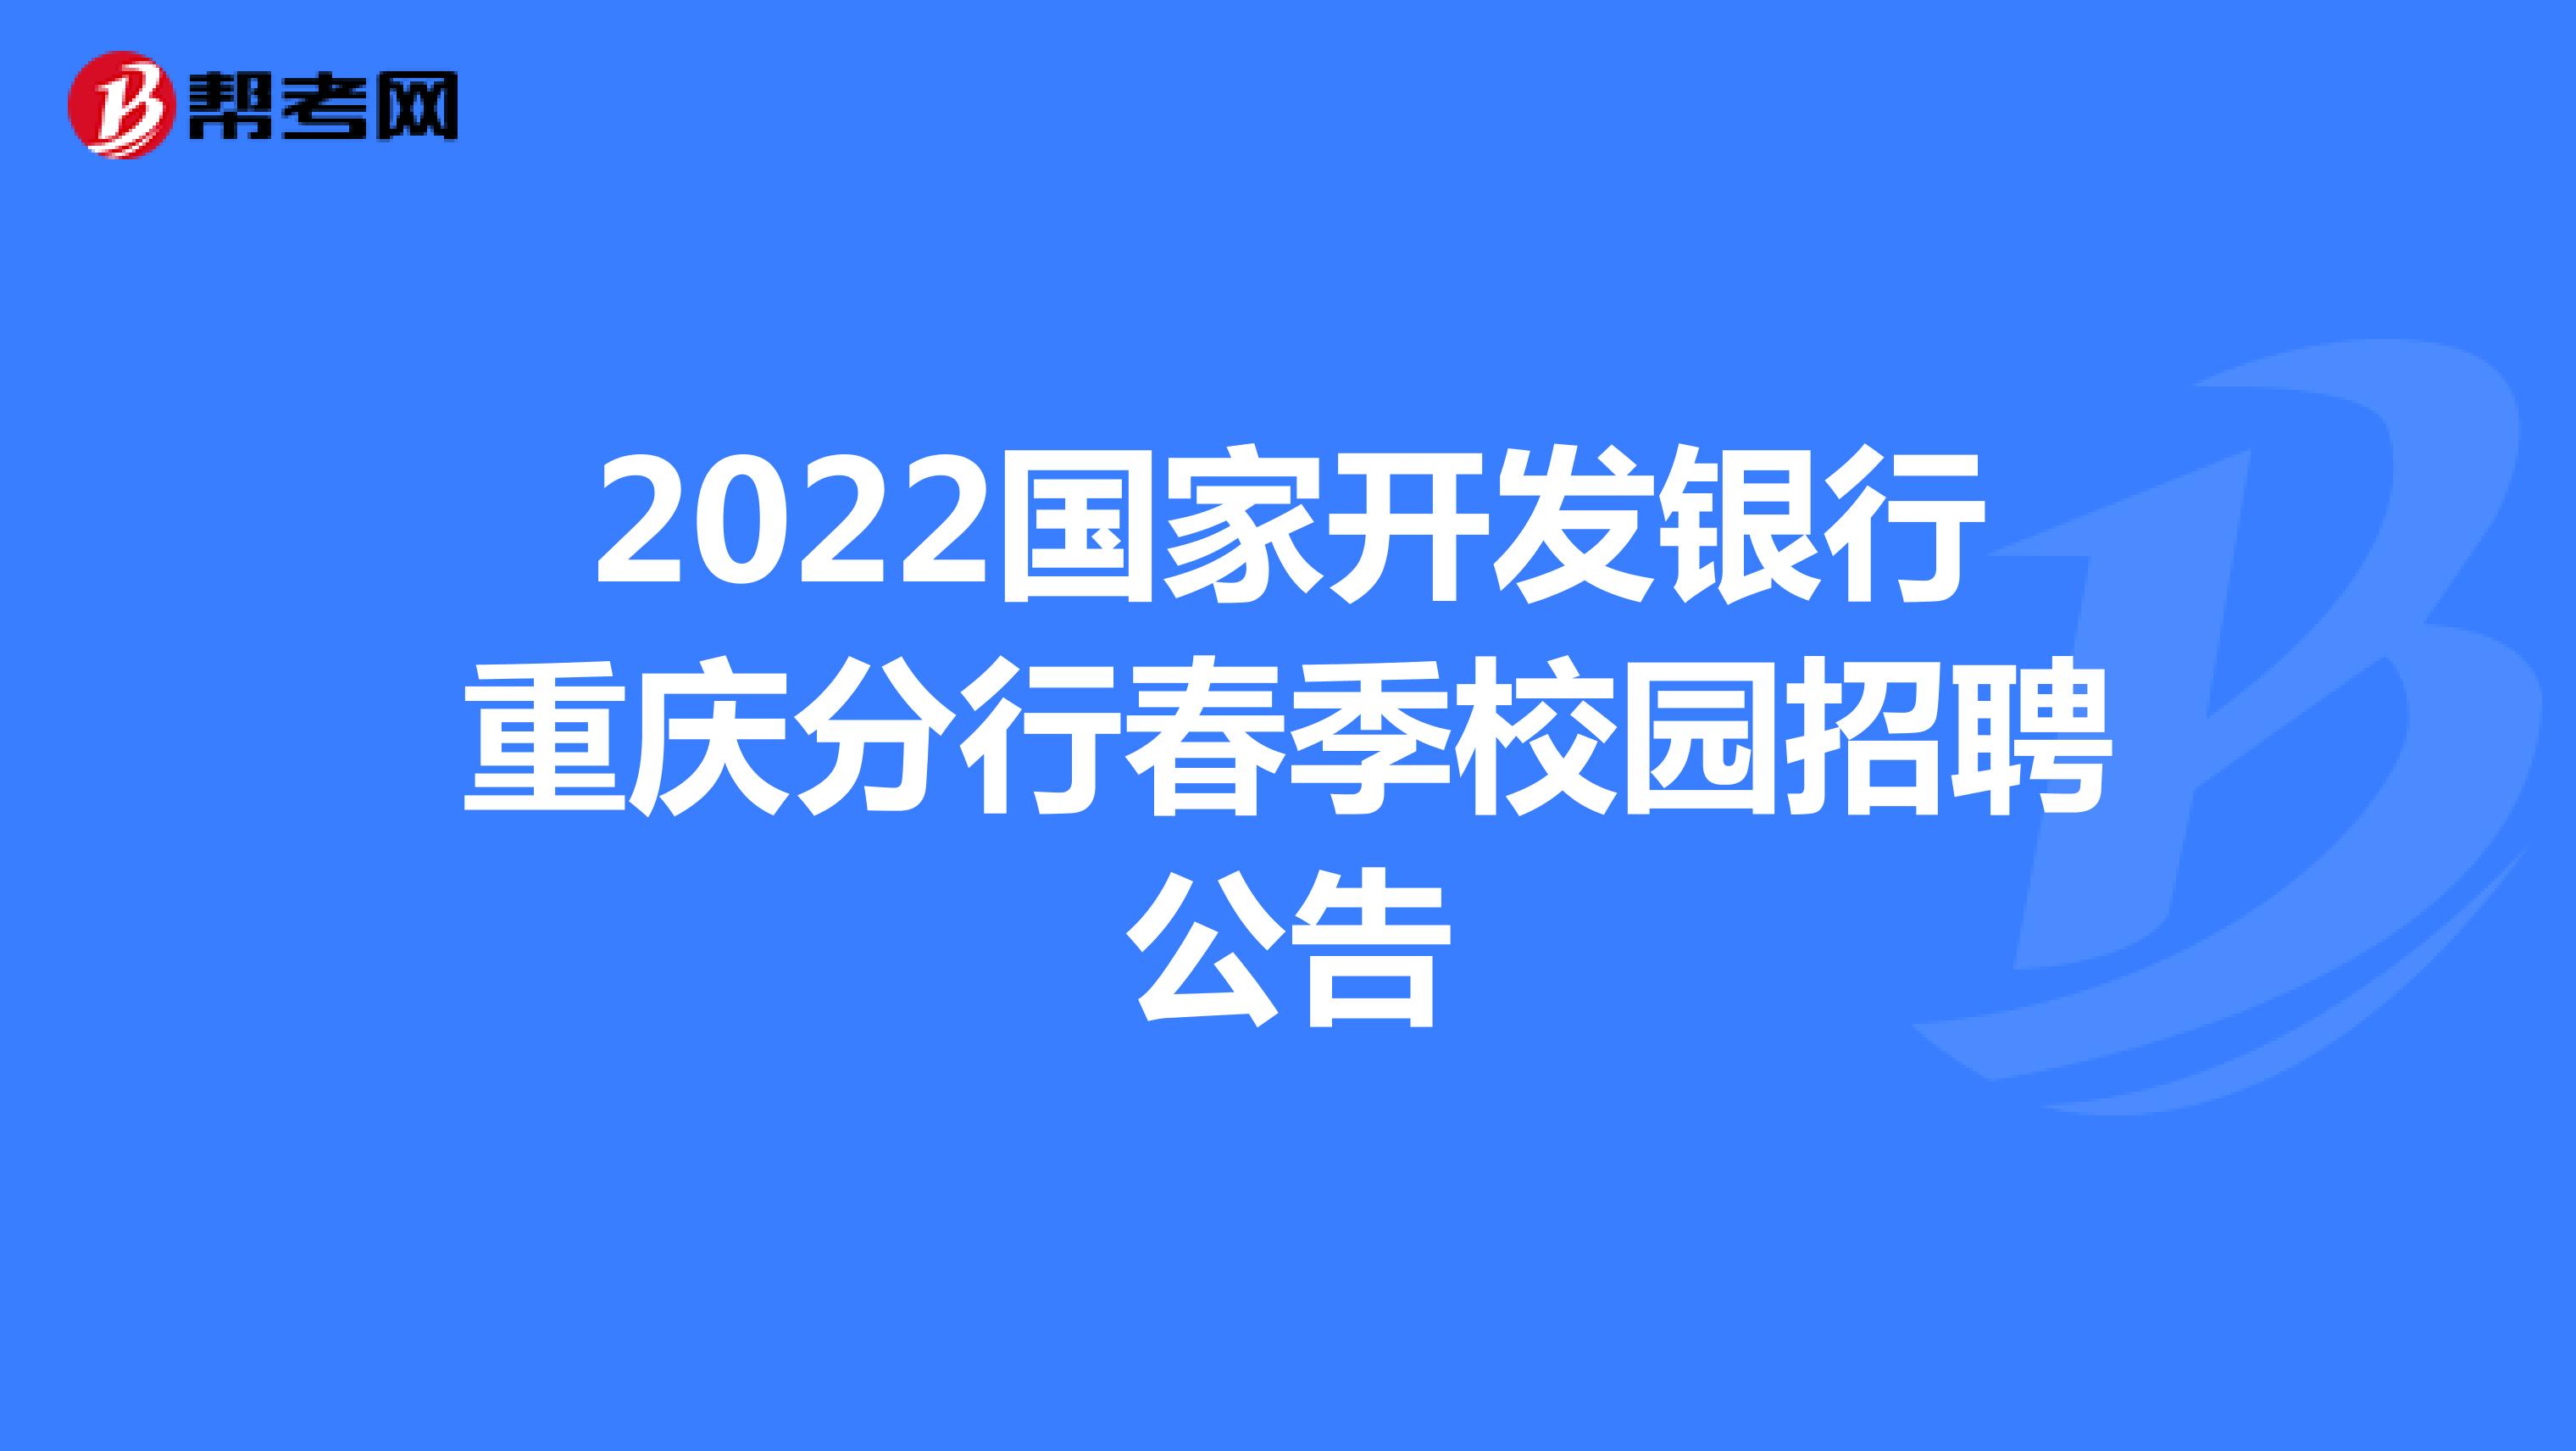 2022國家開發銀行重慶分行春季校園招聘公告